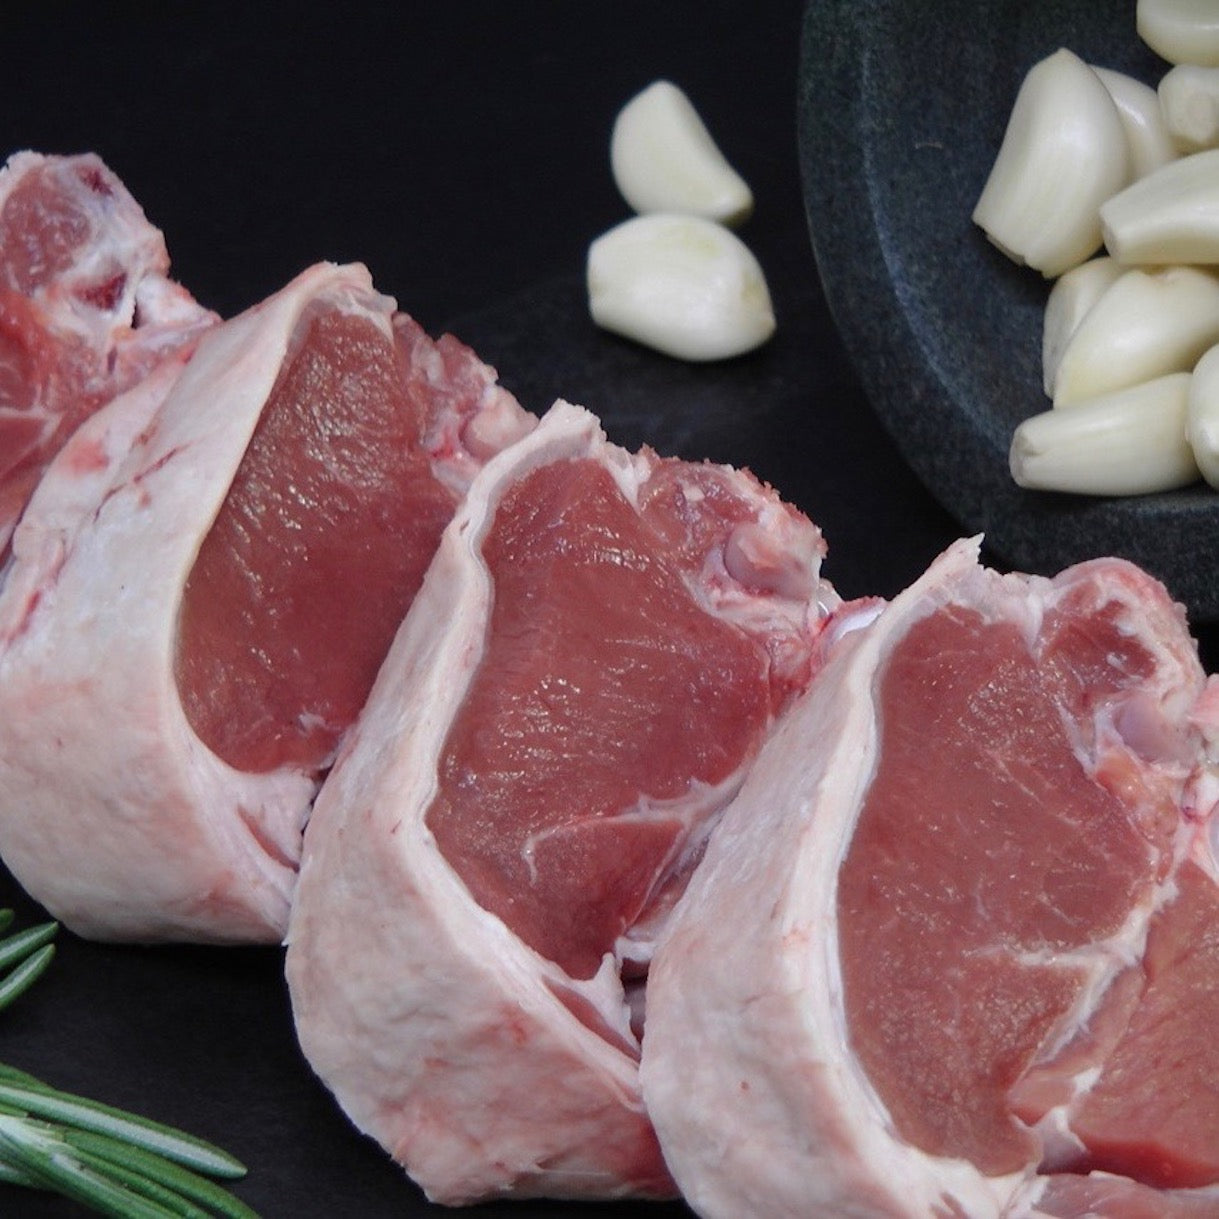 lamb-short-loin-pair-split-australia-2-5kg-grocery-delivery-singapore-thenewgrocer